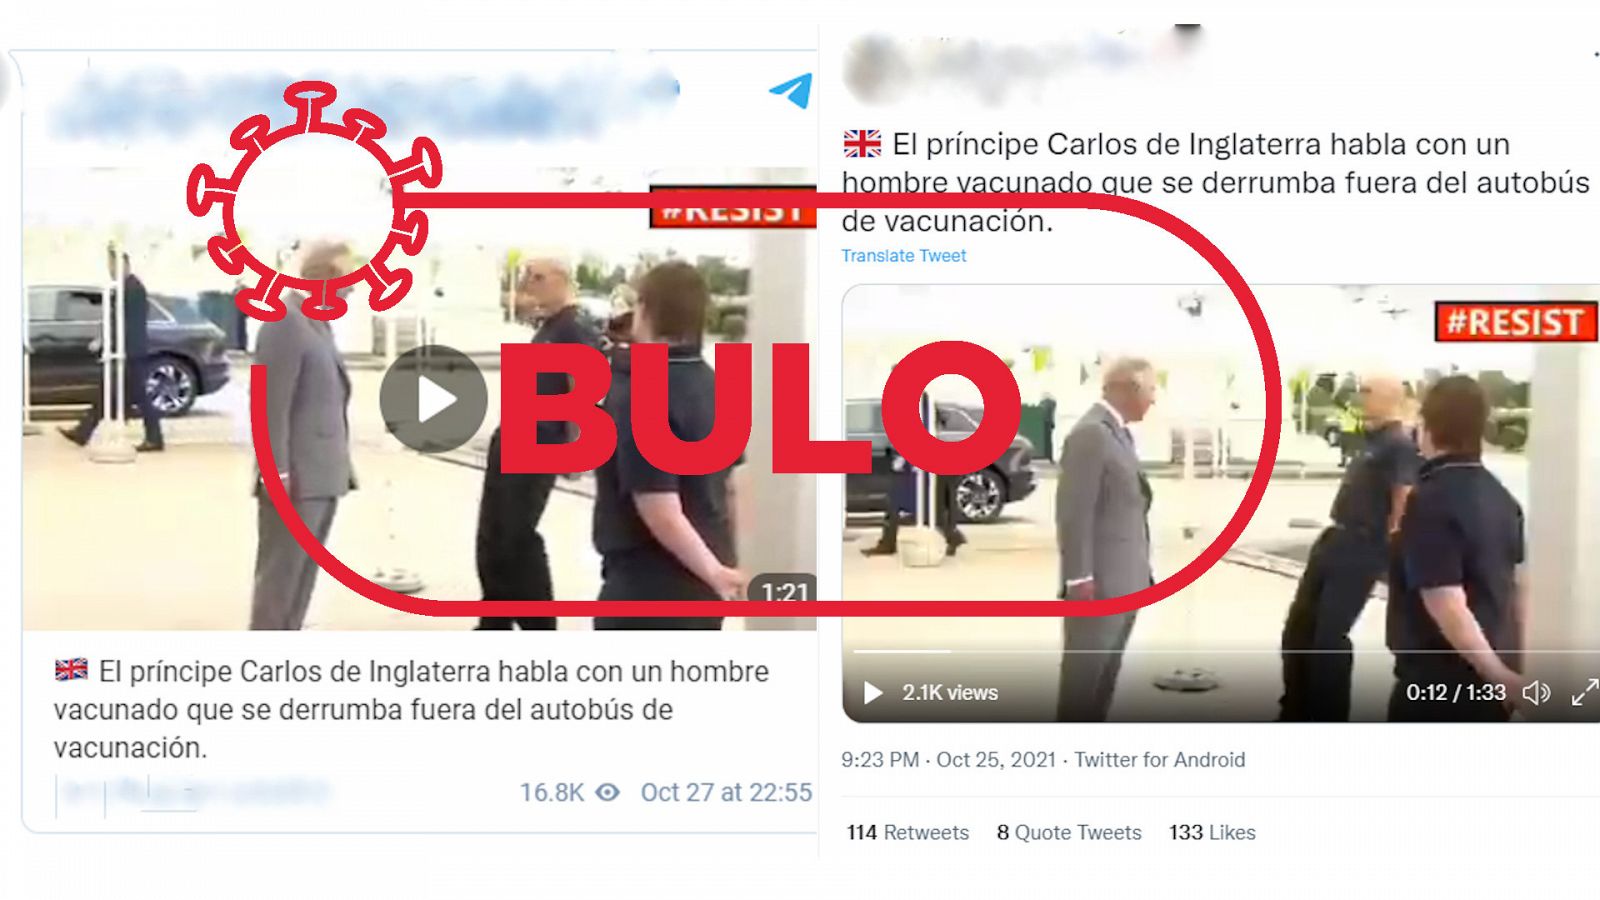 Dos mensajes de redes que reproducen el bulo de que un trabajador se desmayó ante el príncipe Carlos por la vacuna anticoronavirus, con el sello rojo de bulo de VerificaRTVE